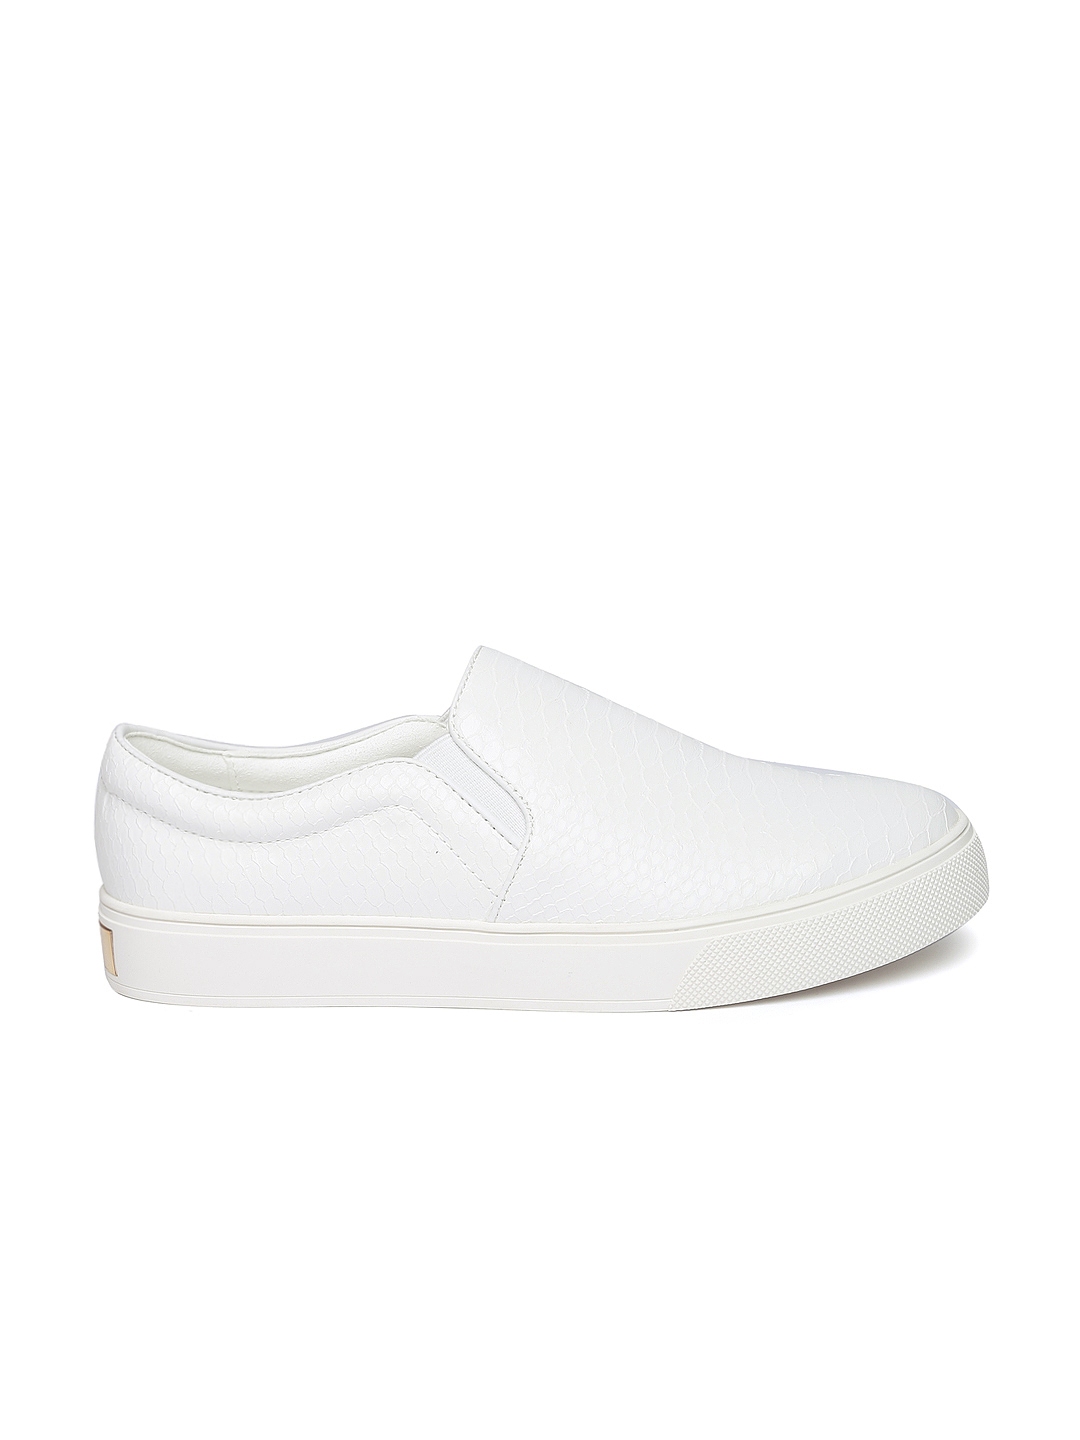 Buy ALDO Women White Slip On Sneakers - Casual Shoes Women 1851243 | Myntra